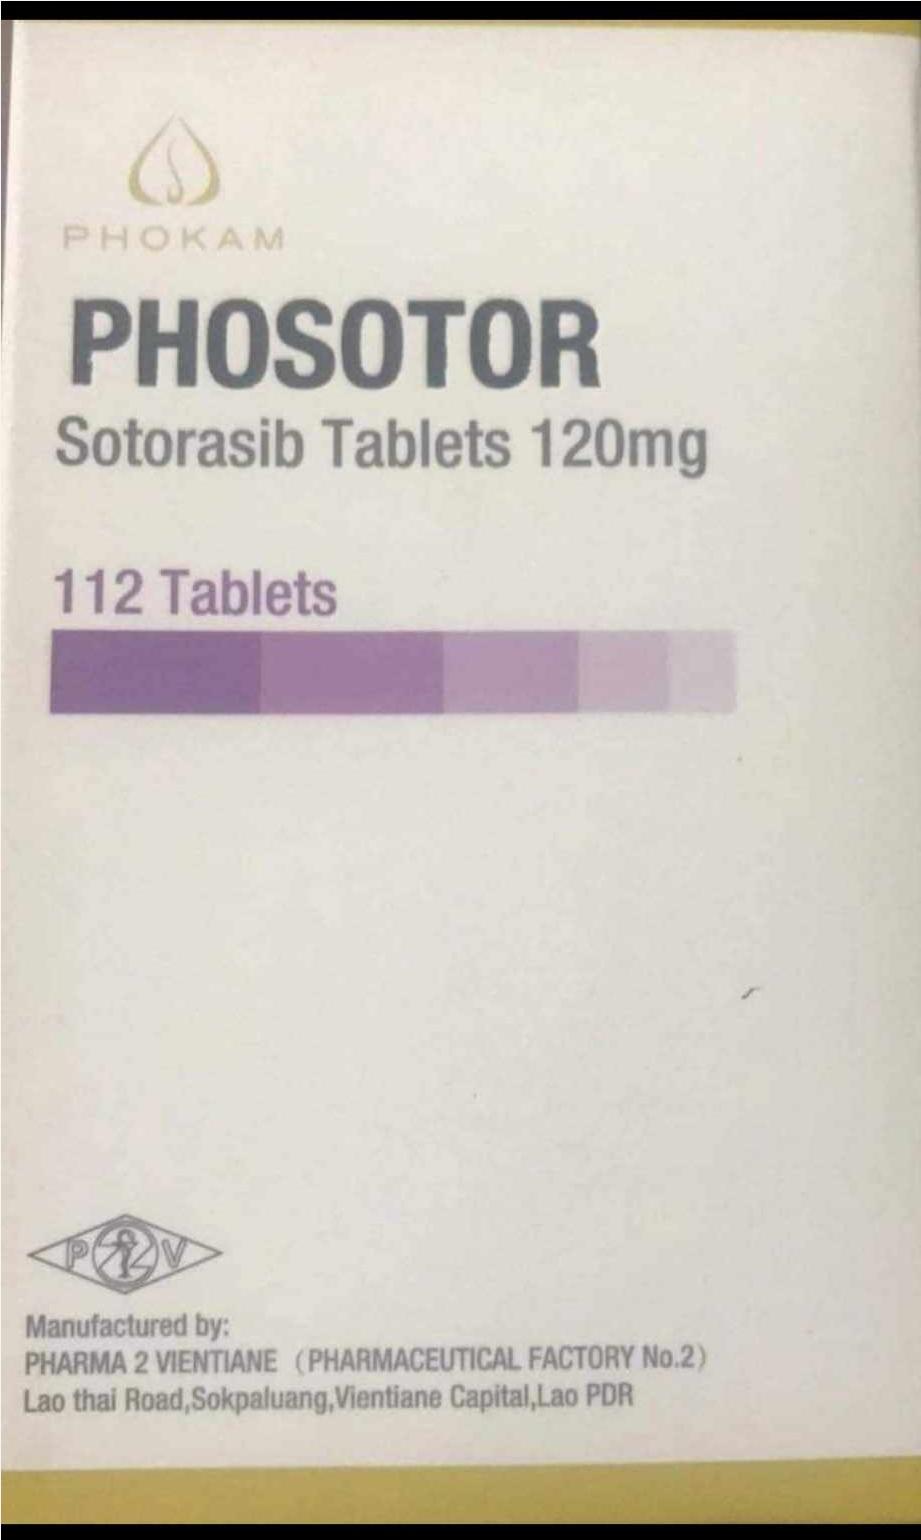 Thuốc Phosotor Sotorasib 120mg giá bao nhiêu mua ở đâu